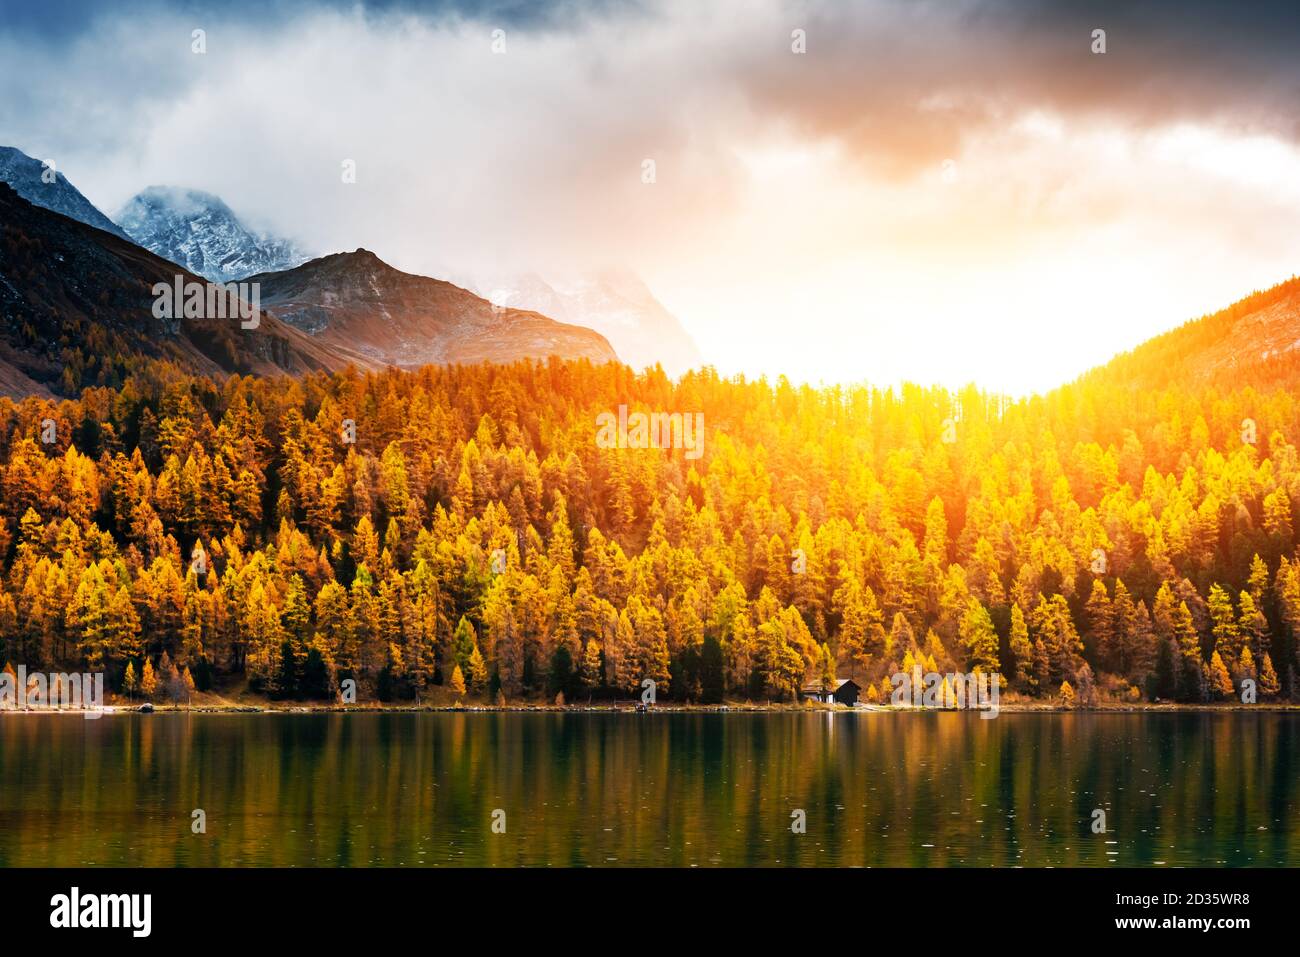 Der Silsersee in den Schweizer Alpen. Farbenfroher Wald mit oranger Lärche. Schweiz, Region Maloja, Oberengadin. Landschaftsfotografie Stockfoto